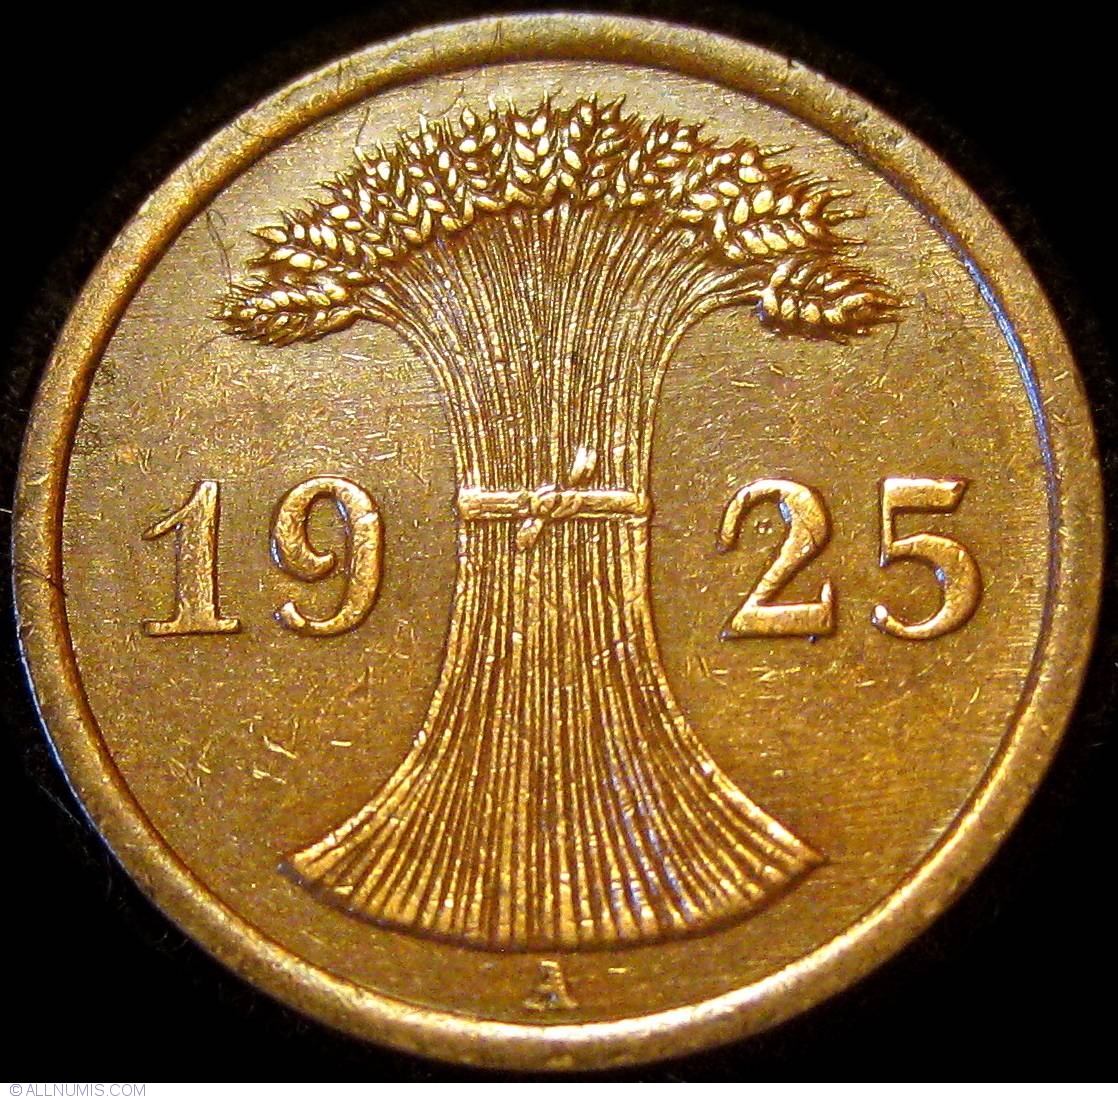 2 Reichspfennig 1925 A, Weimar Republic (1919-1932) - Germany - Coin